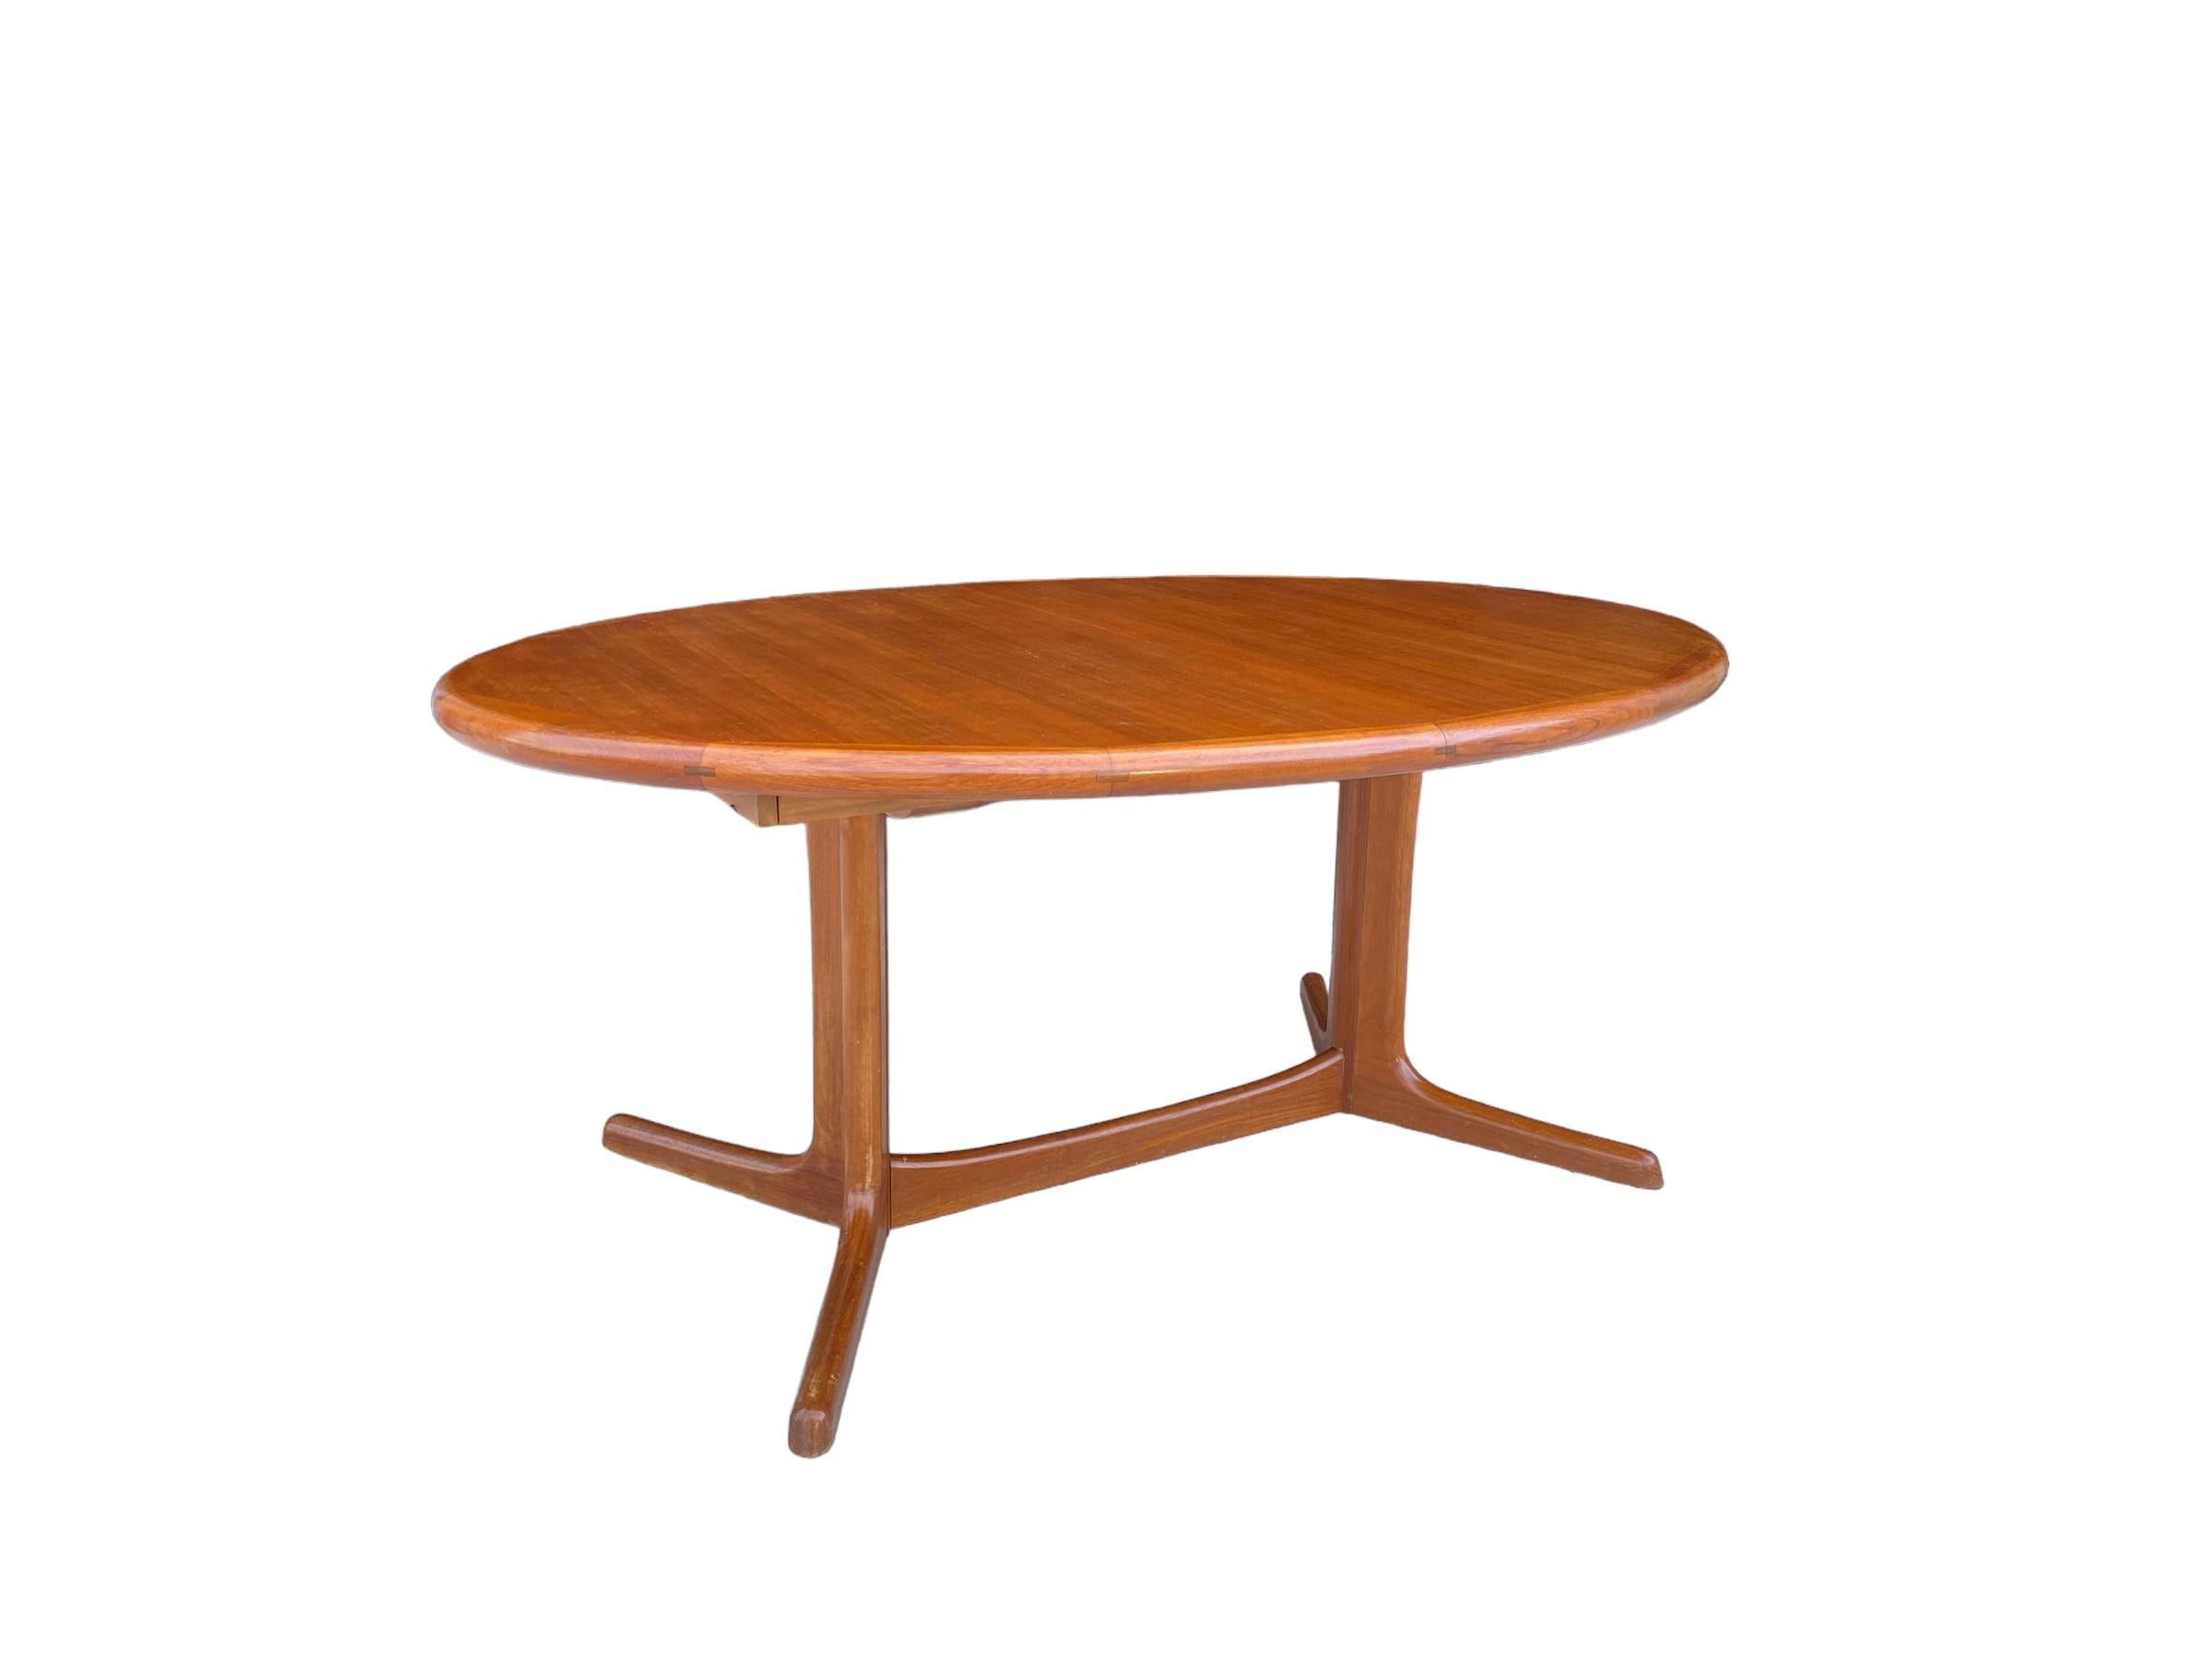 Table de salle à manger danoise en teck par Dyrlund. Cette table ovale présente un grain de teck ancien et une couleur riche. L'extrémité ovale effilée et les bords en bandes ajoutent une touche de design élégant. Deux feuilles permettent d'allonger